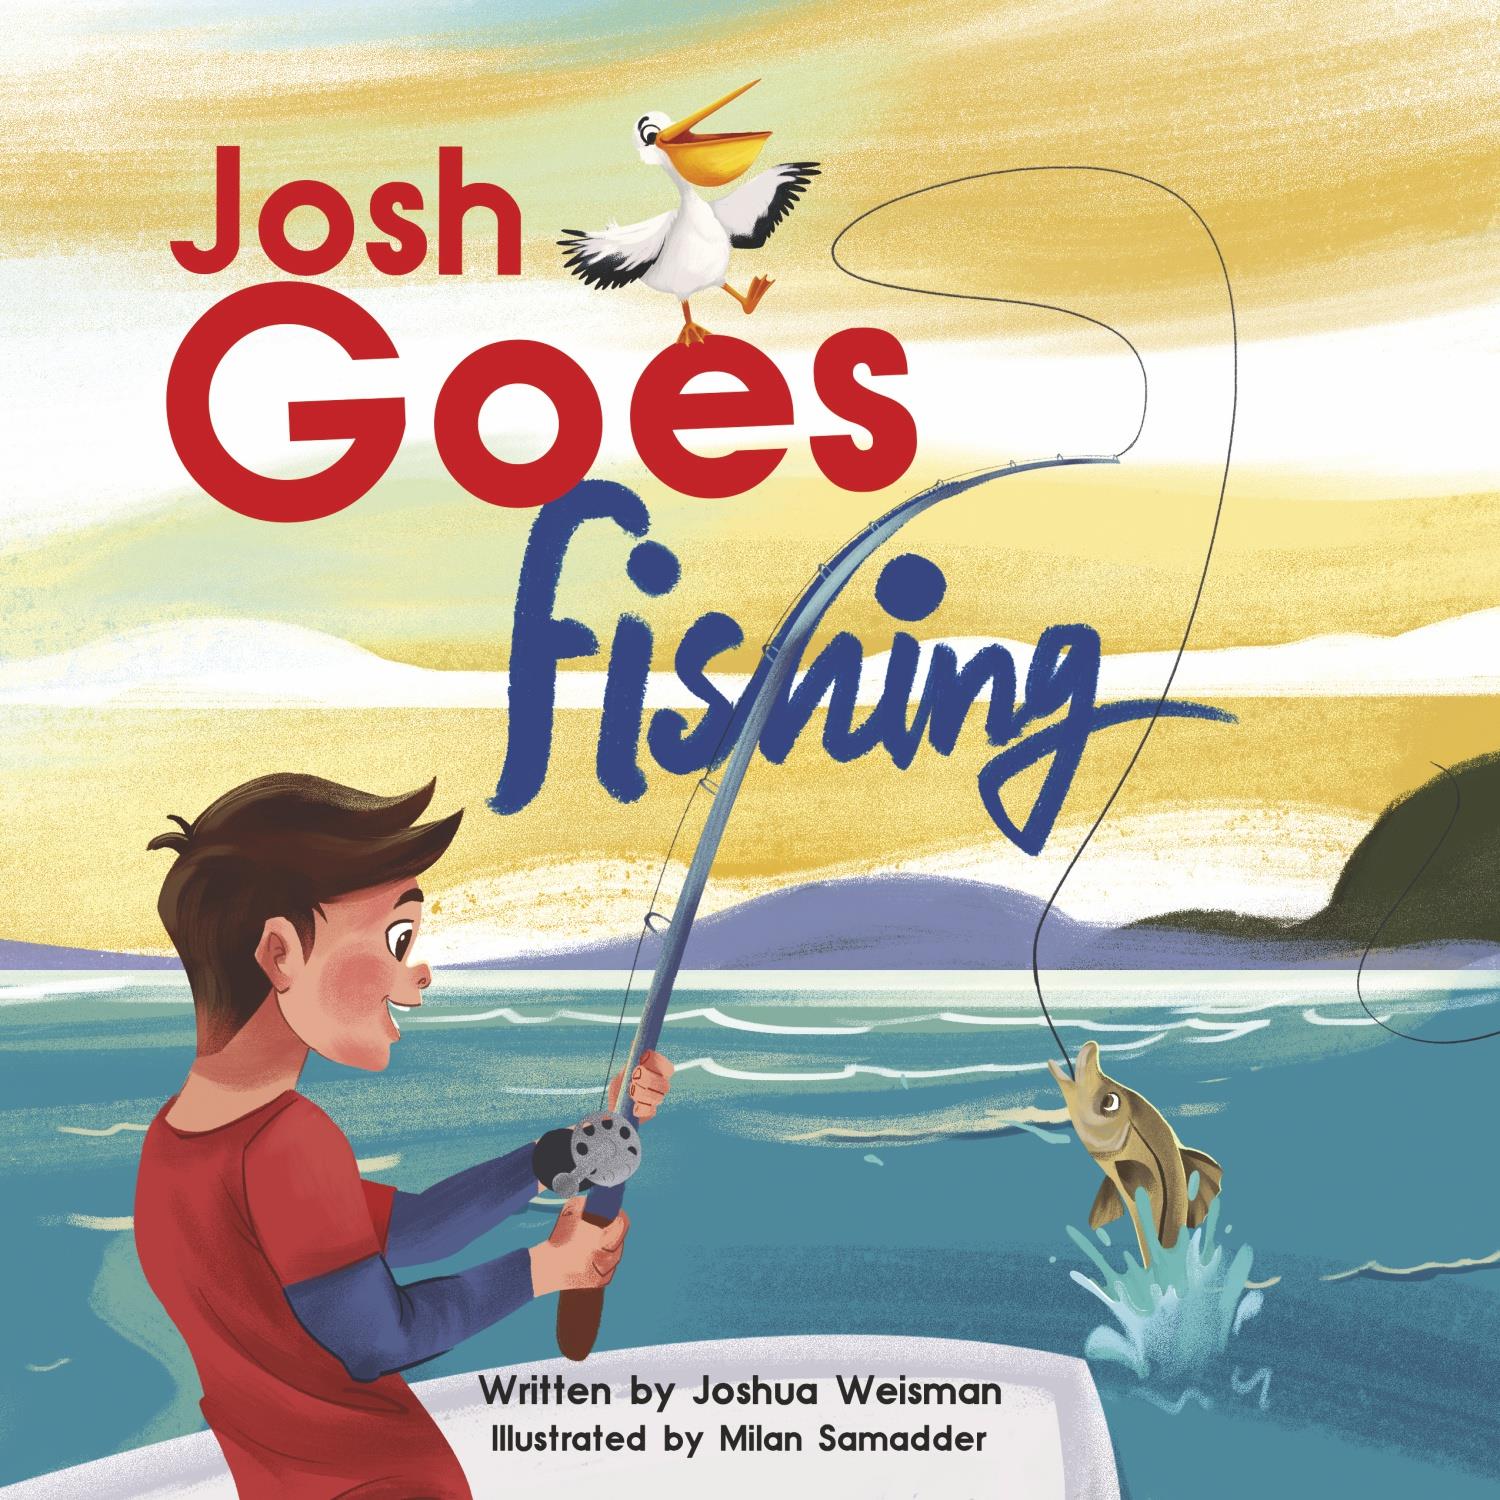 Josh Goes Fishing by Joshua Weisman